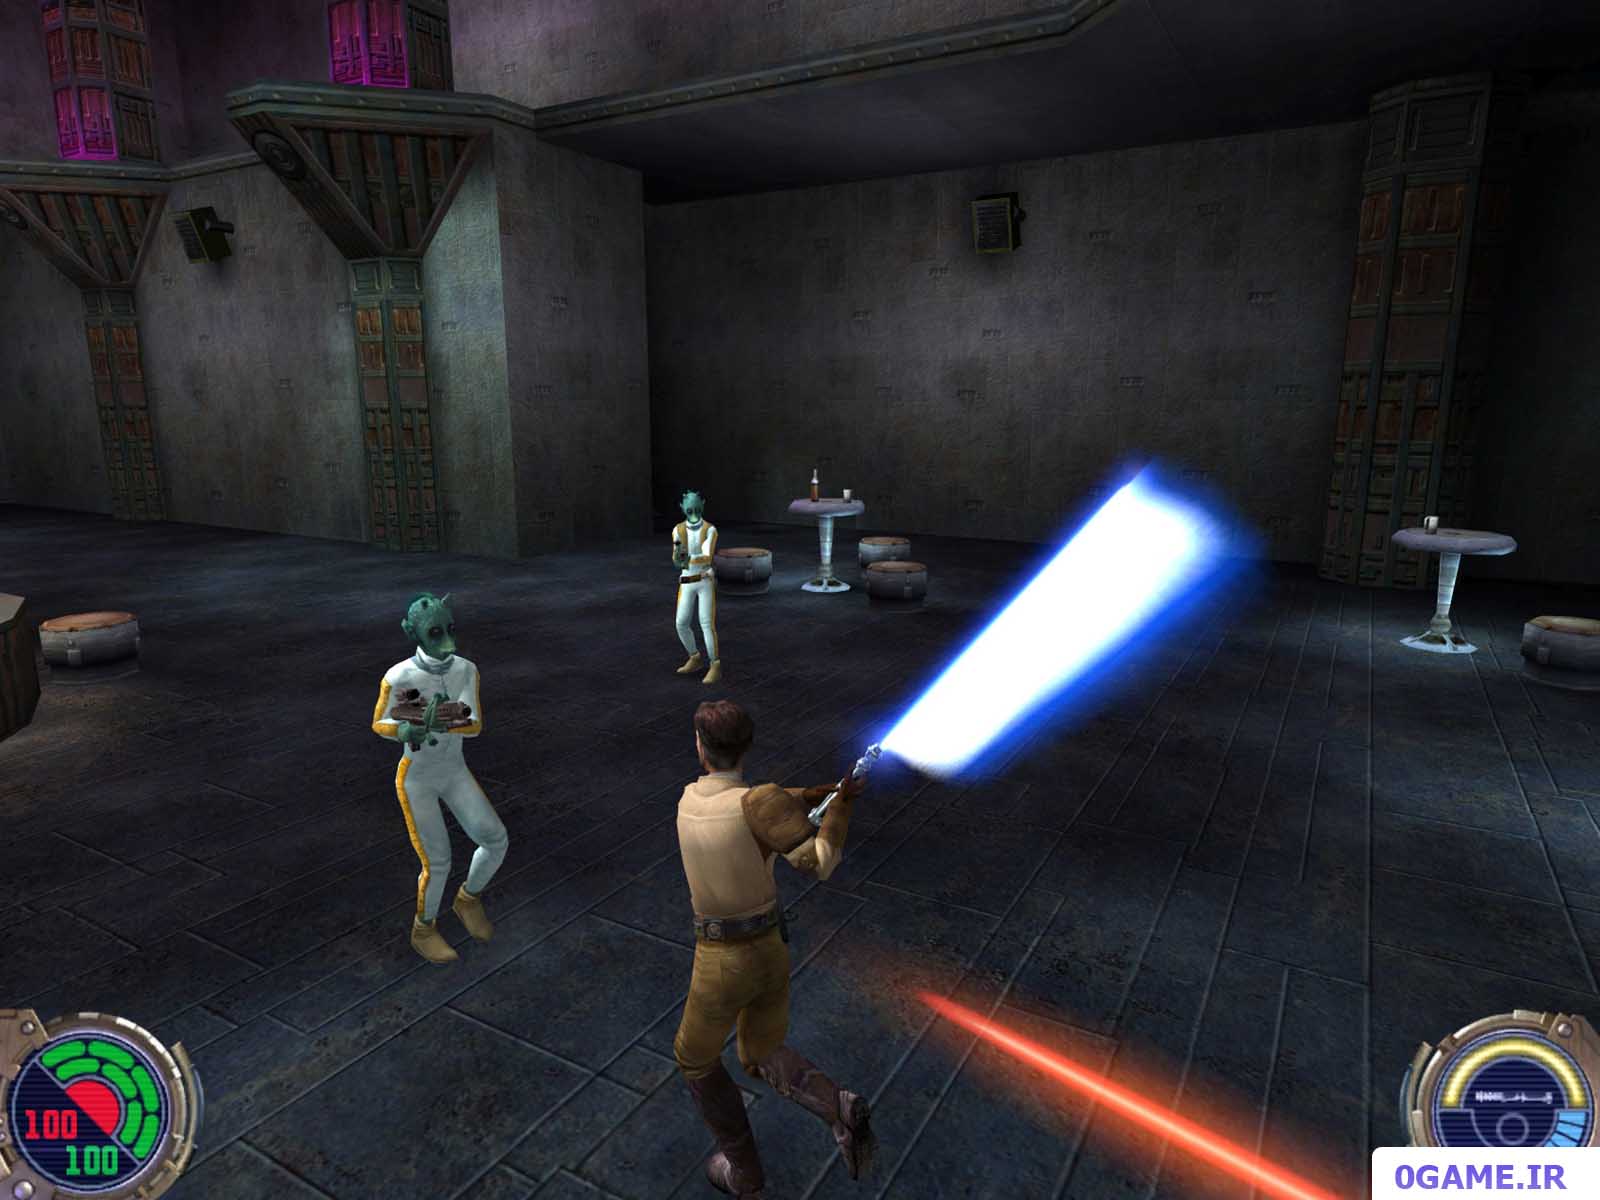 دانلود بازی جنگ ستارگان : شوالیه جدی 2 (Star Wars: Jedi Knight II - Jedi Outcast) نسخه کامل برای کامپیوتر